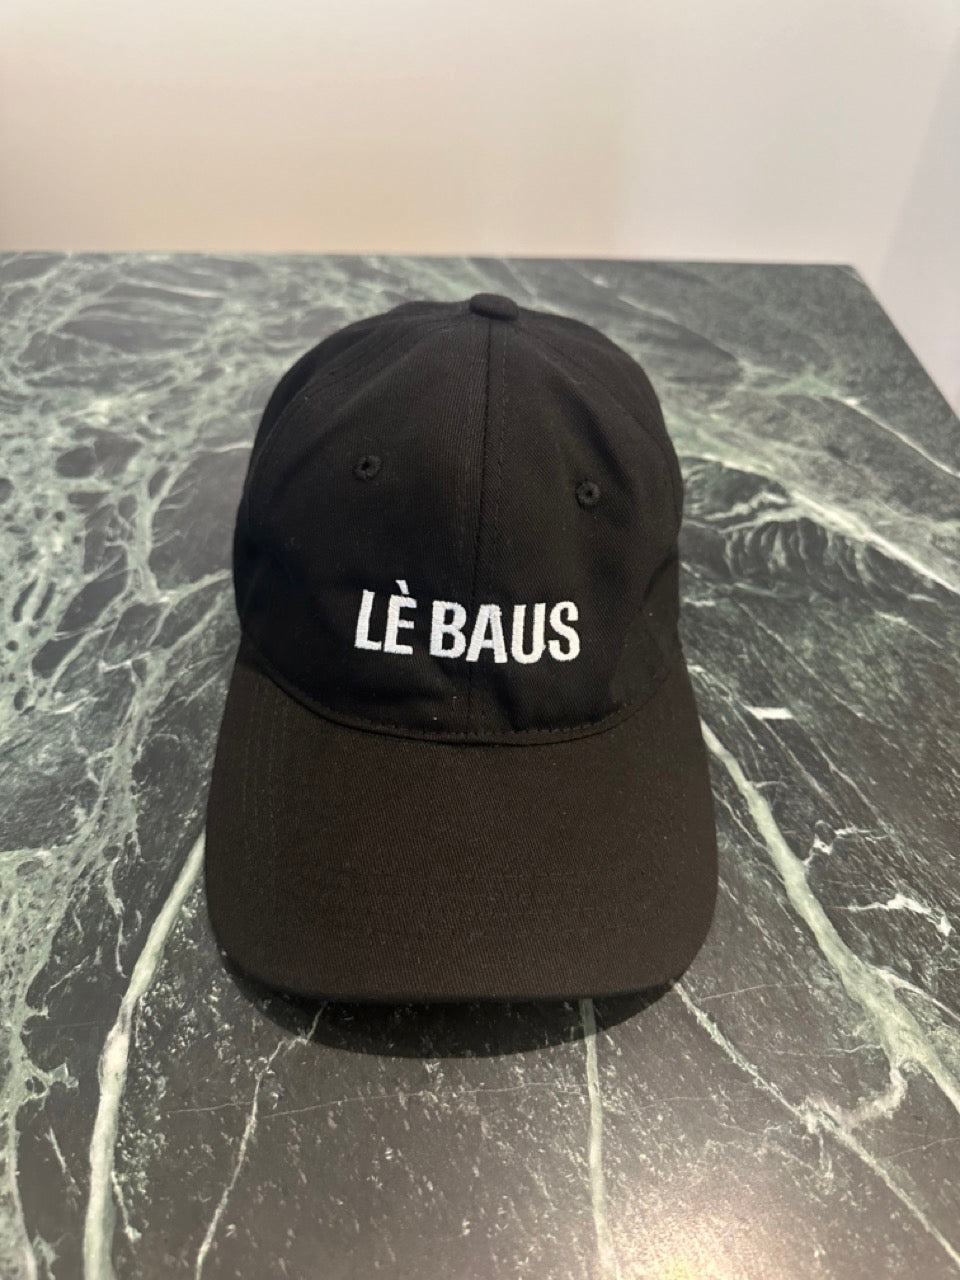 LÈ BAUS LOGO CAP - BLACK